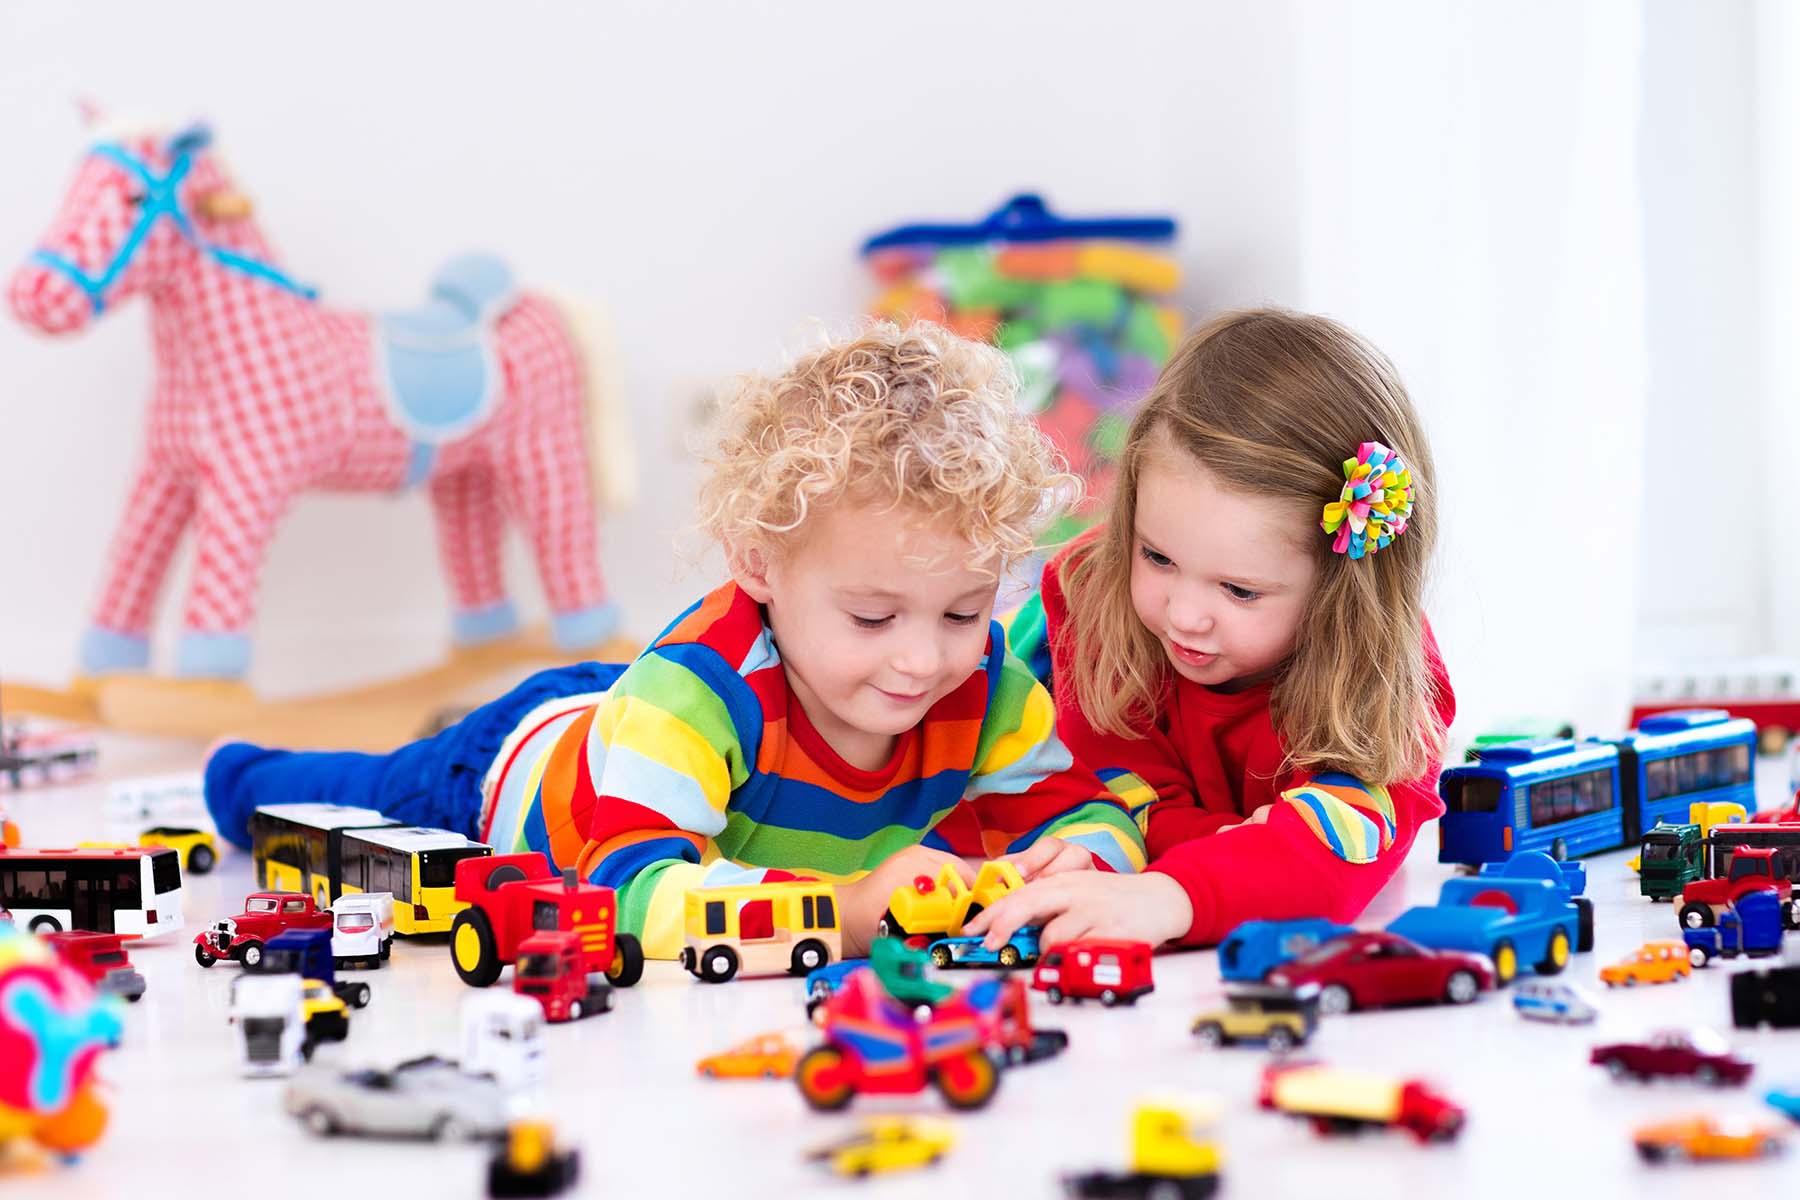 اهمیت اسباب بازی در رشد کودک و انتخاب اسباب بازی مناسب برای سنین مختلف